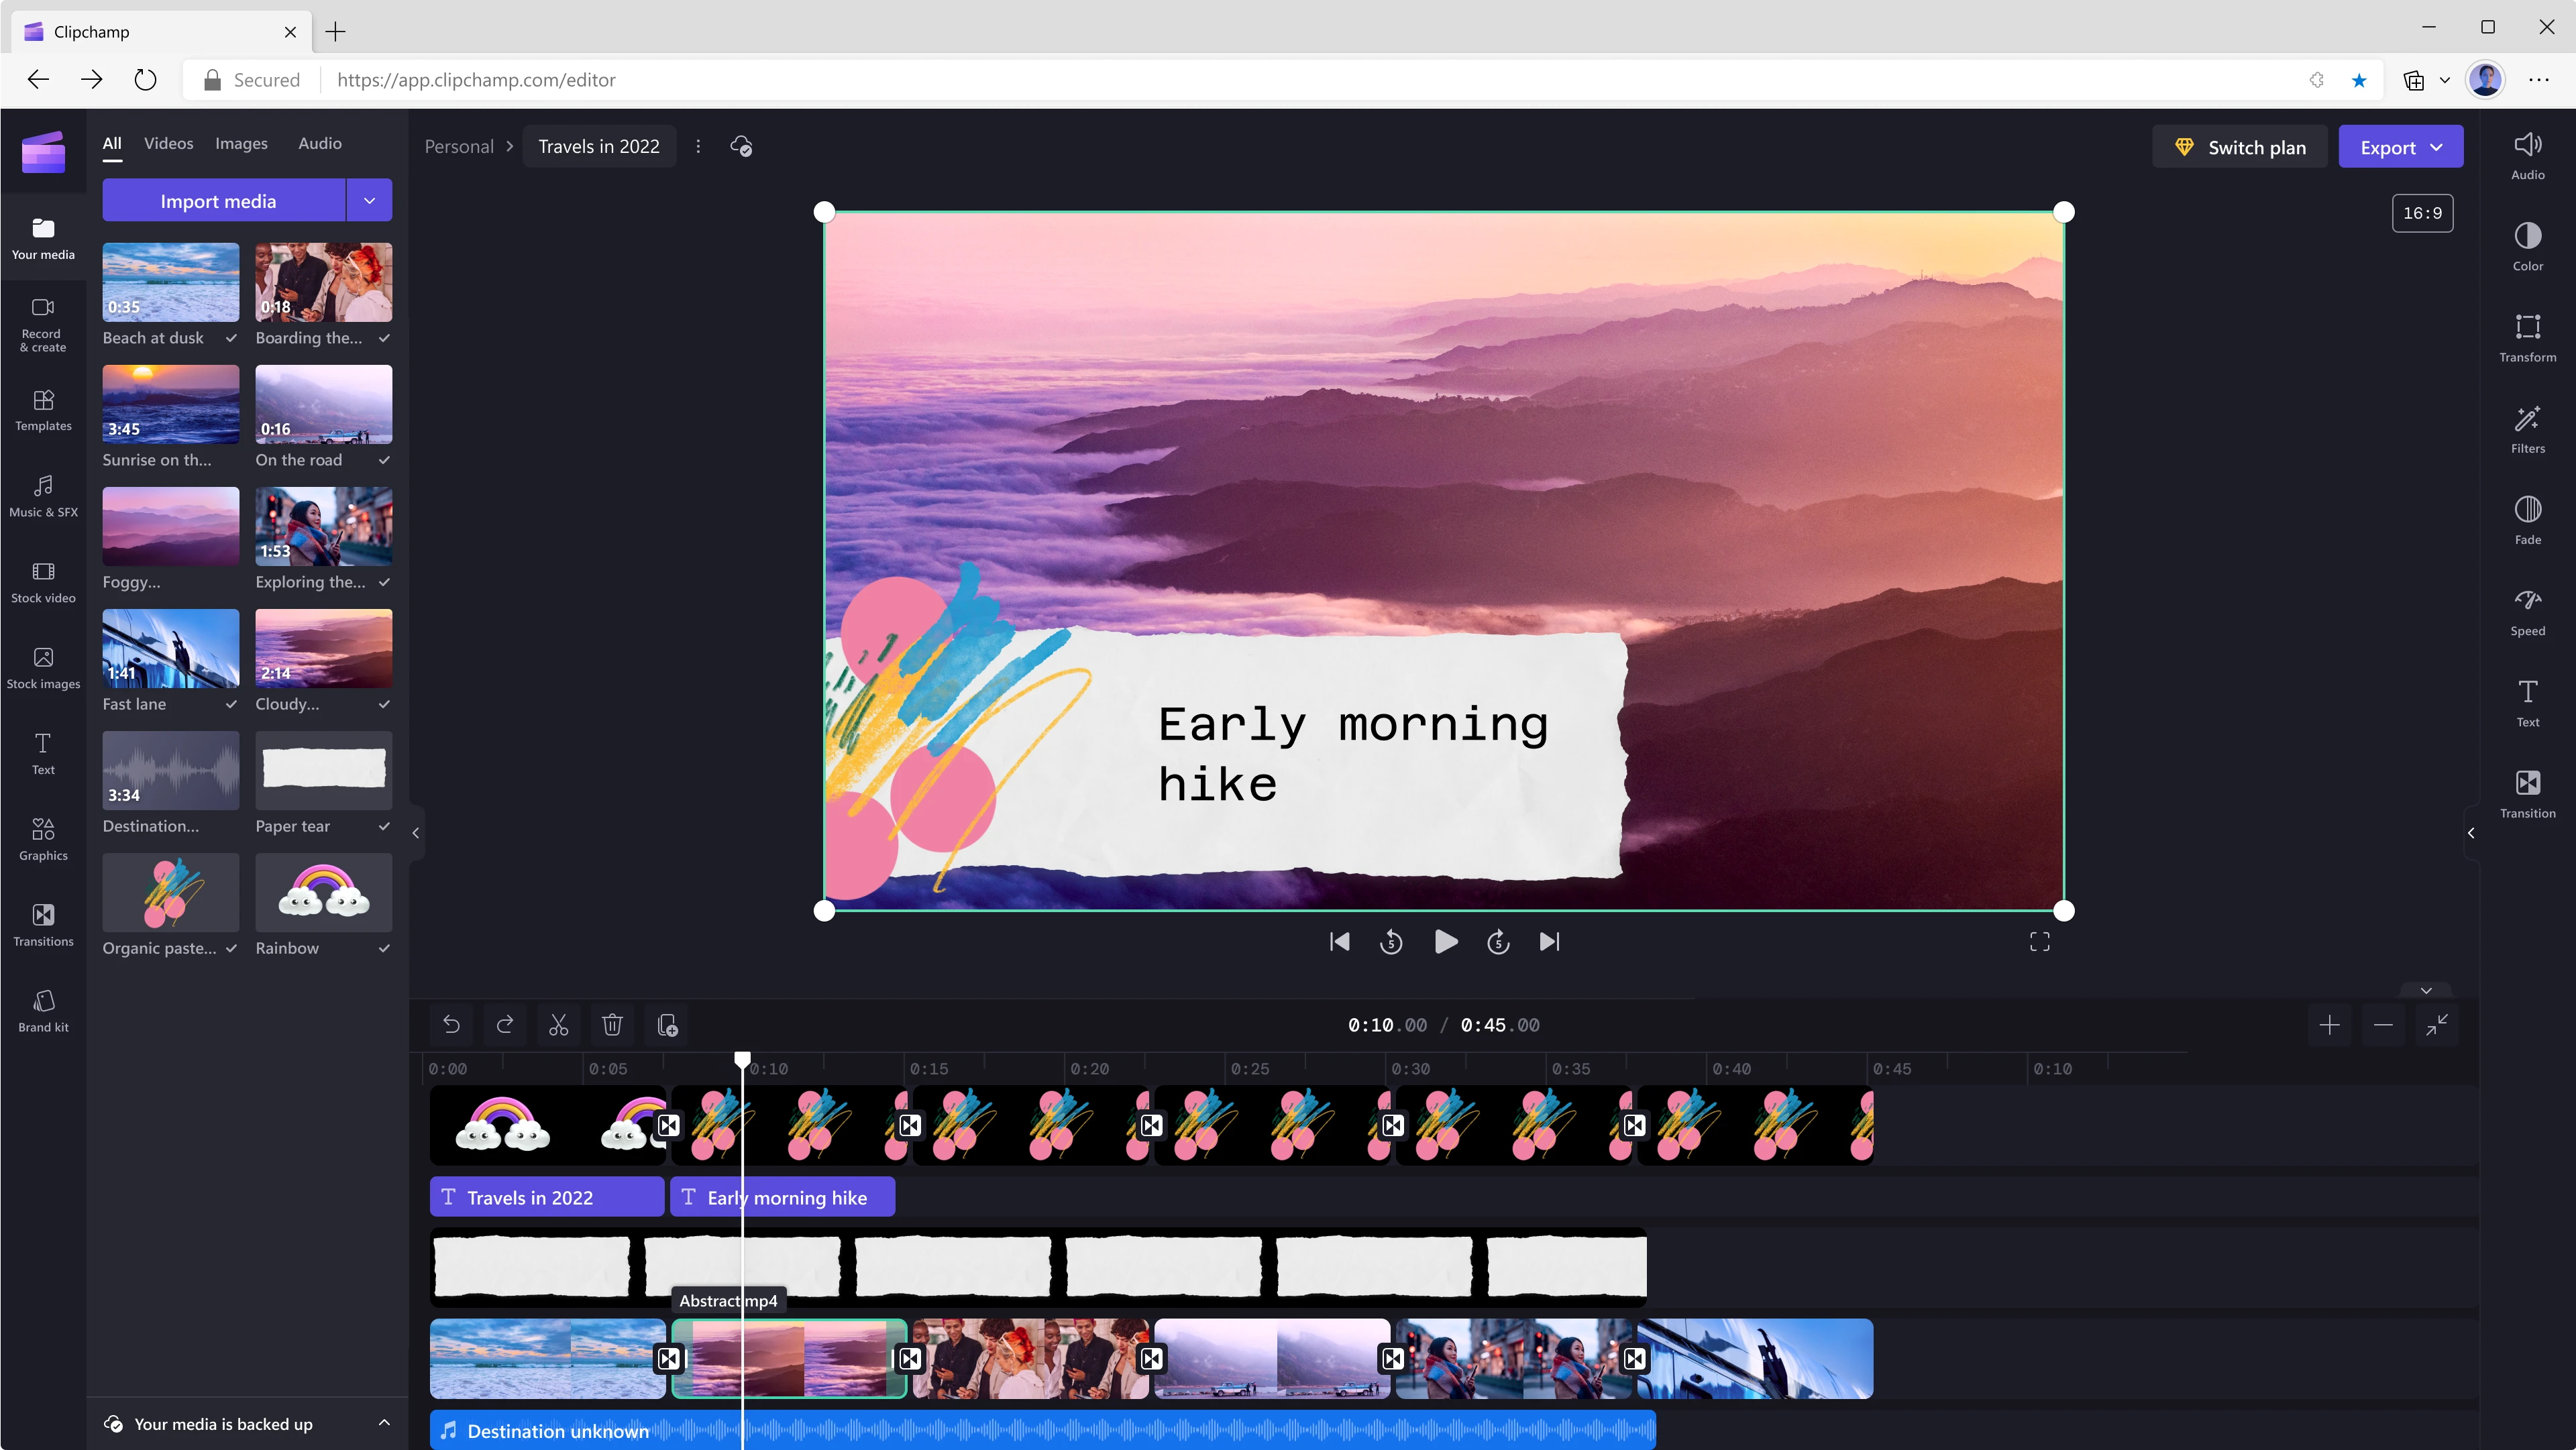 En bruger redigerer en 45 sekunders video med Clipchamp. Billedet ved 10 sekunder viser bjerge og skyer i en lilla farve med en tekstoverlejring med ordene 